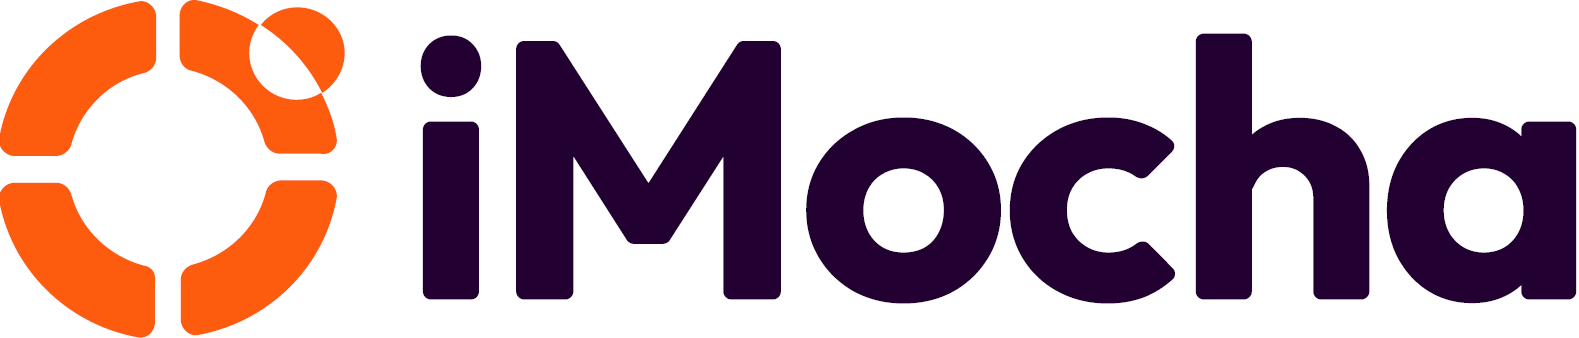 iMocha 'Mocha Technologies Inc'